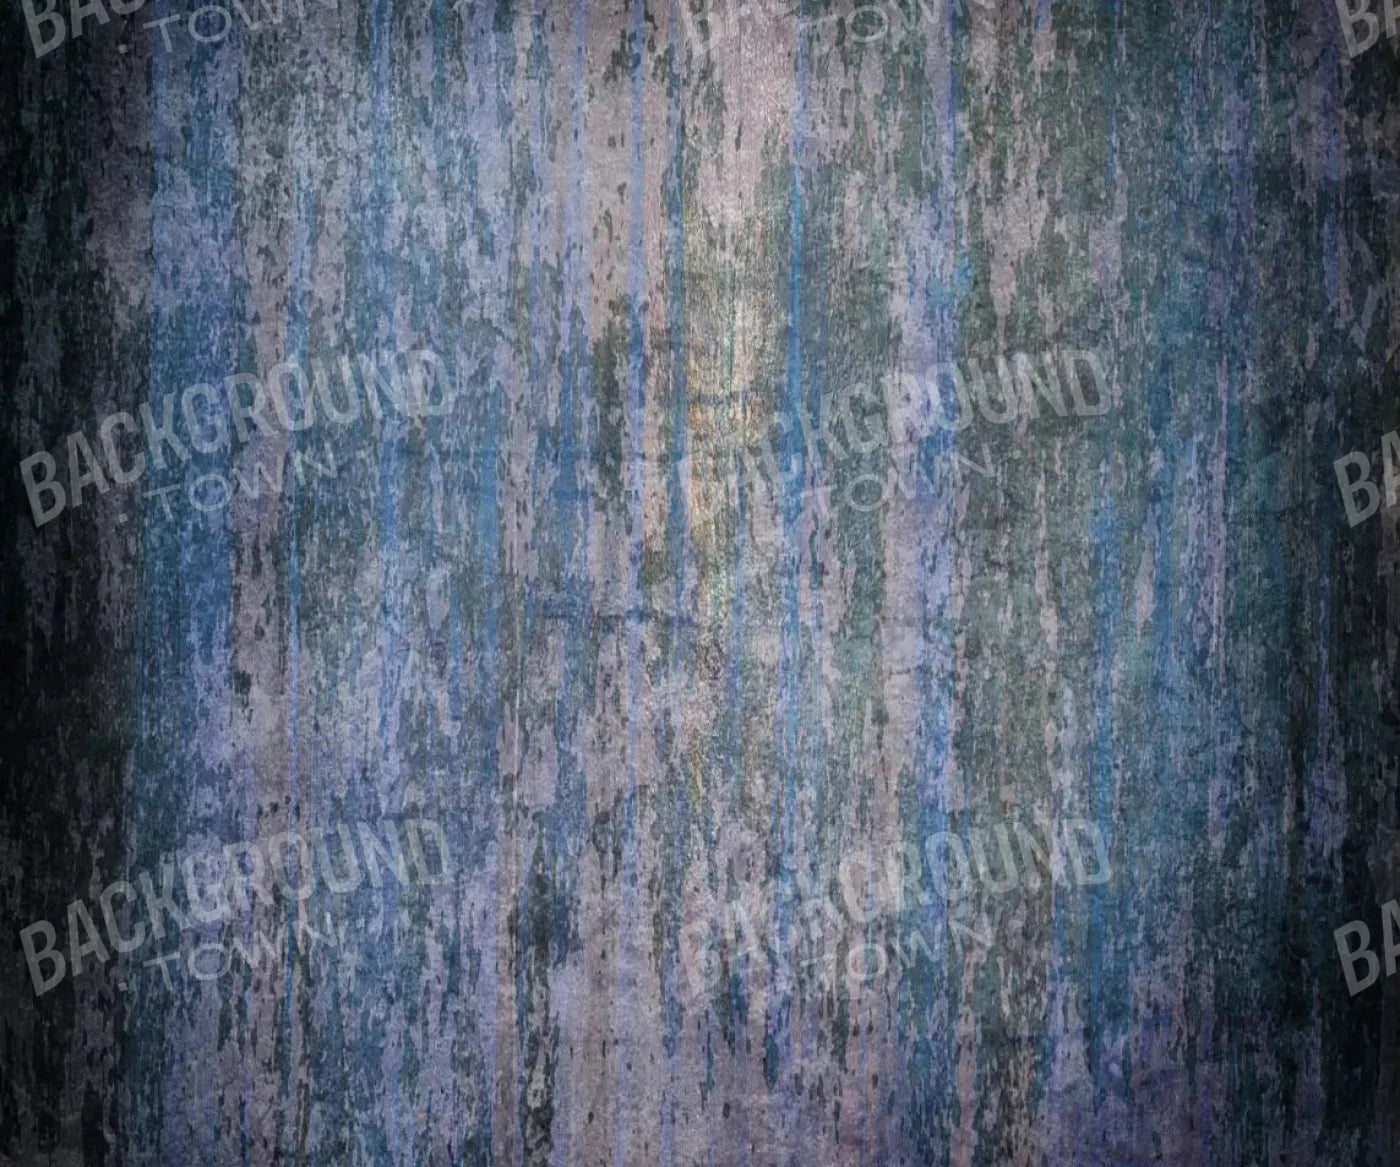 Blueblood 5X42 Fleece ( 60 X 50 Inch ) Backdrop